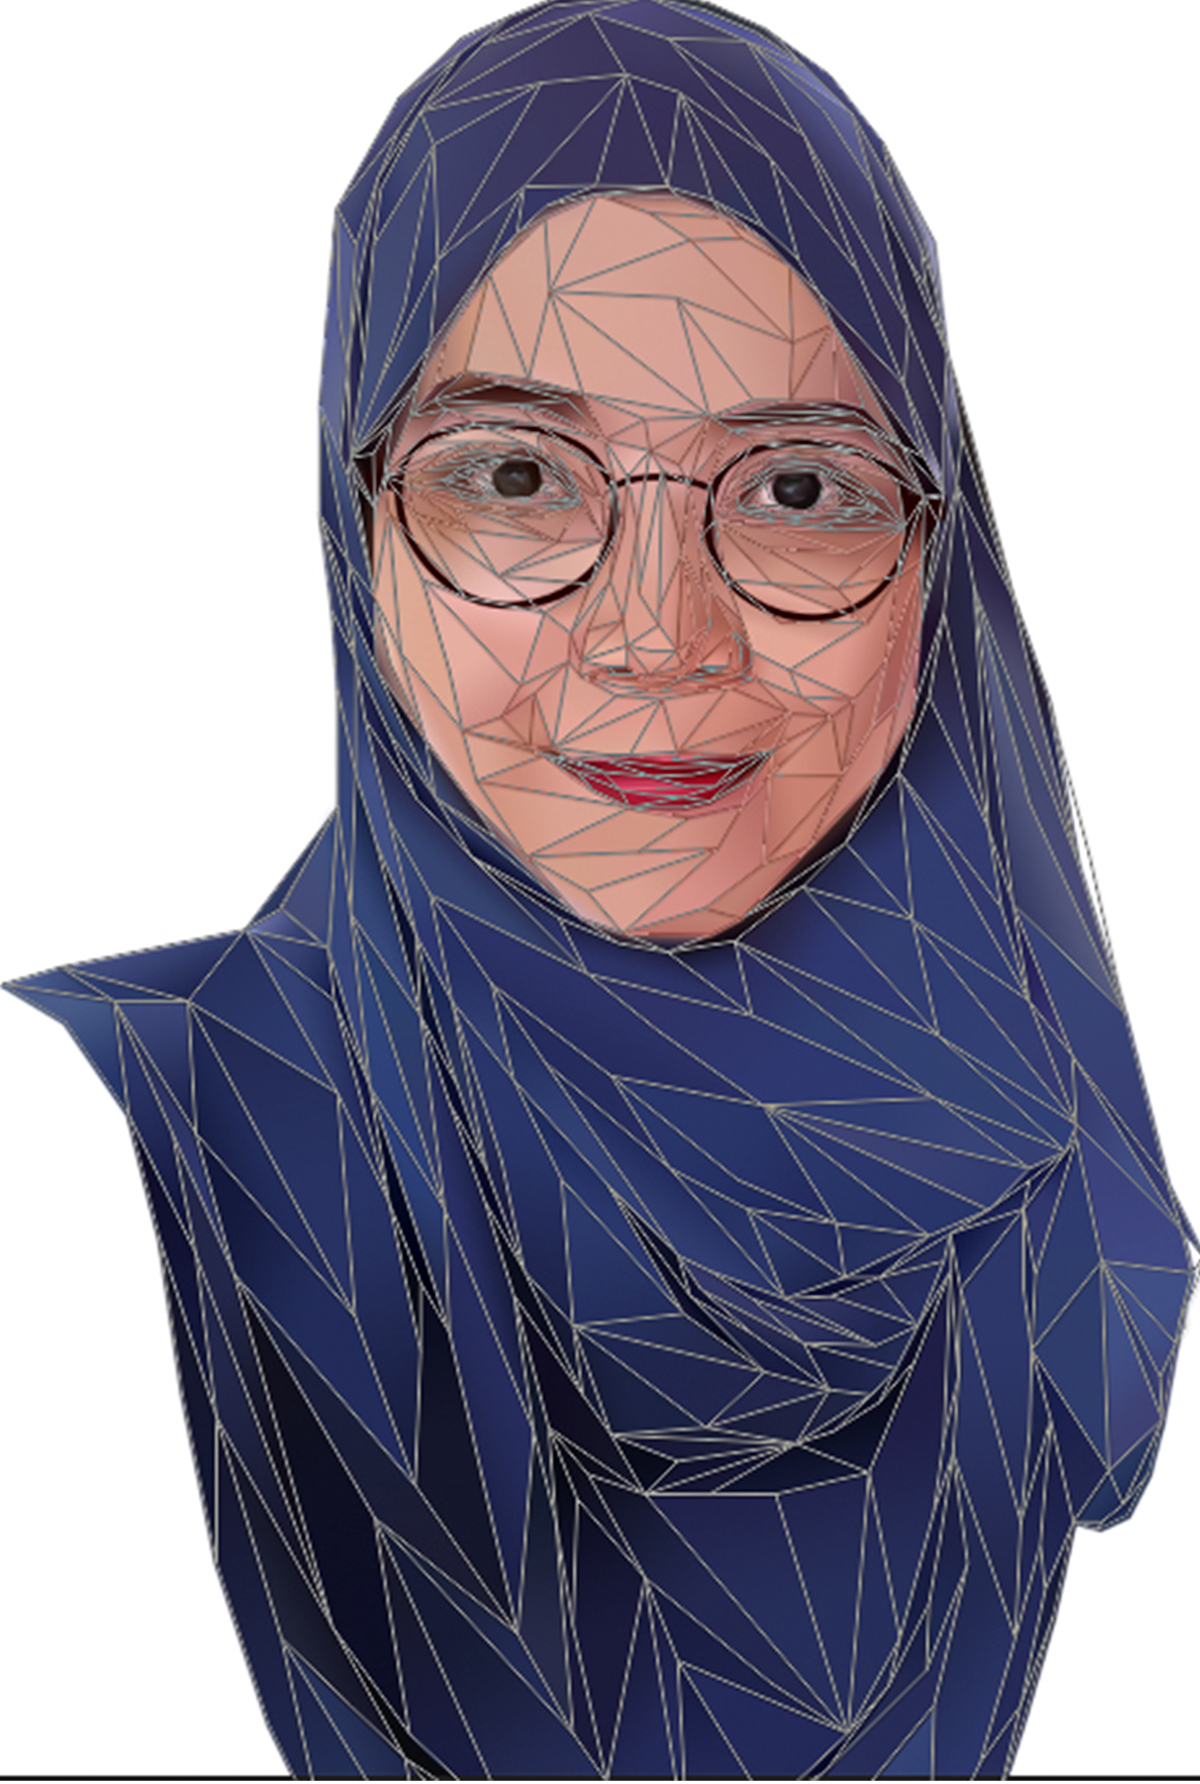 LowPoly Portrait portrait malaysia